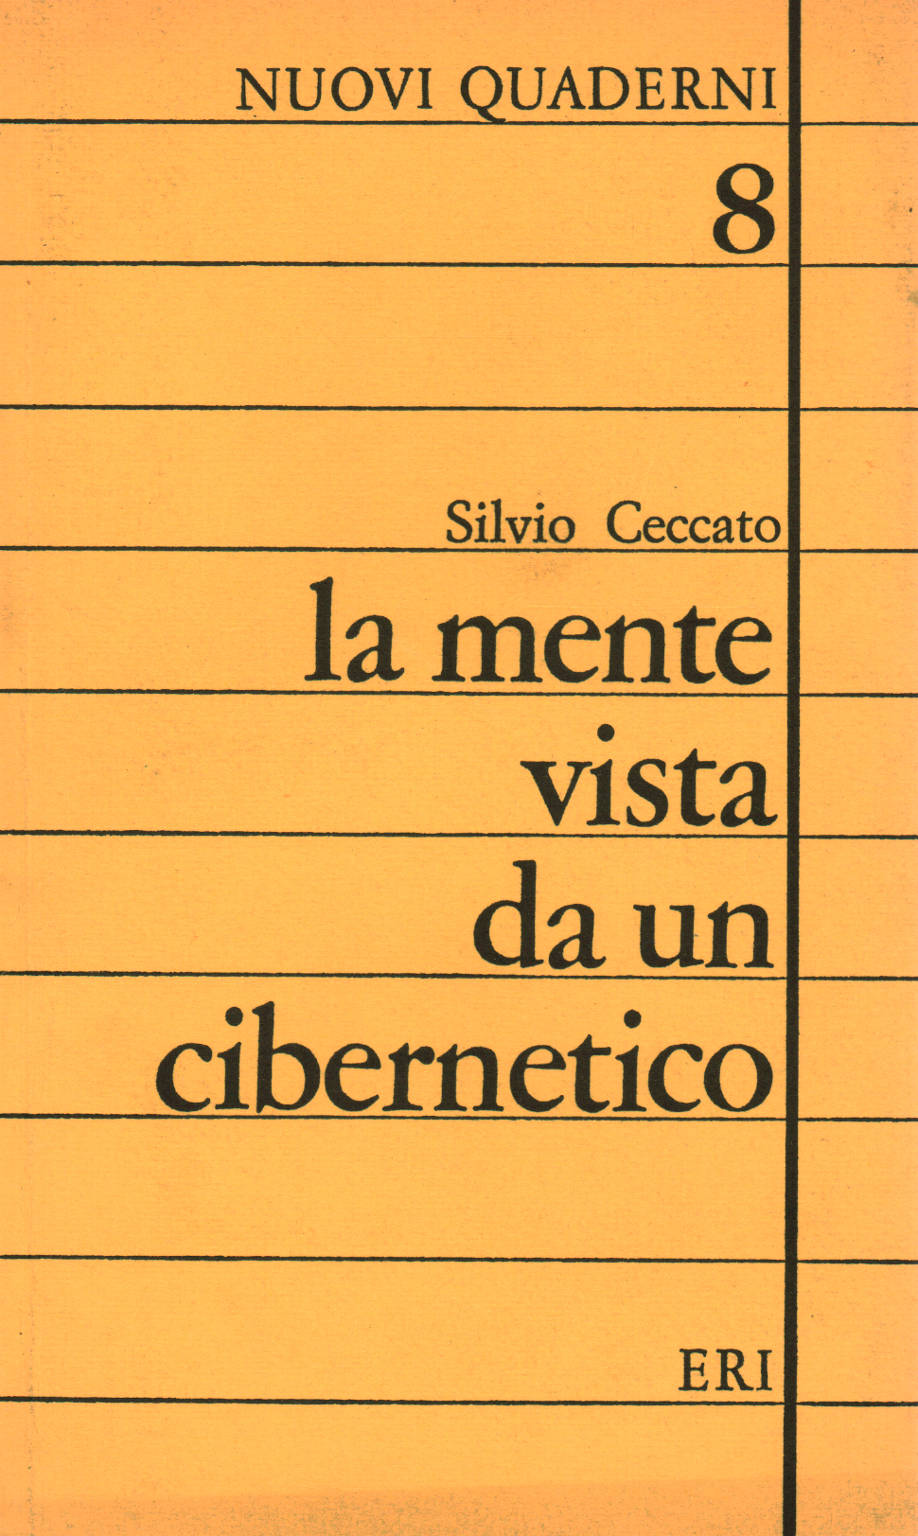 Der Geist des Kybernetikers Silvio Ceccato